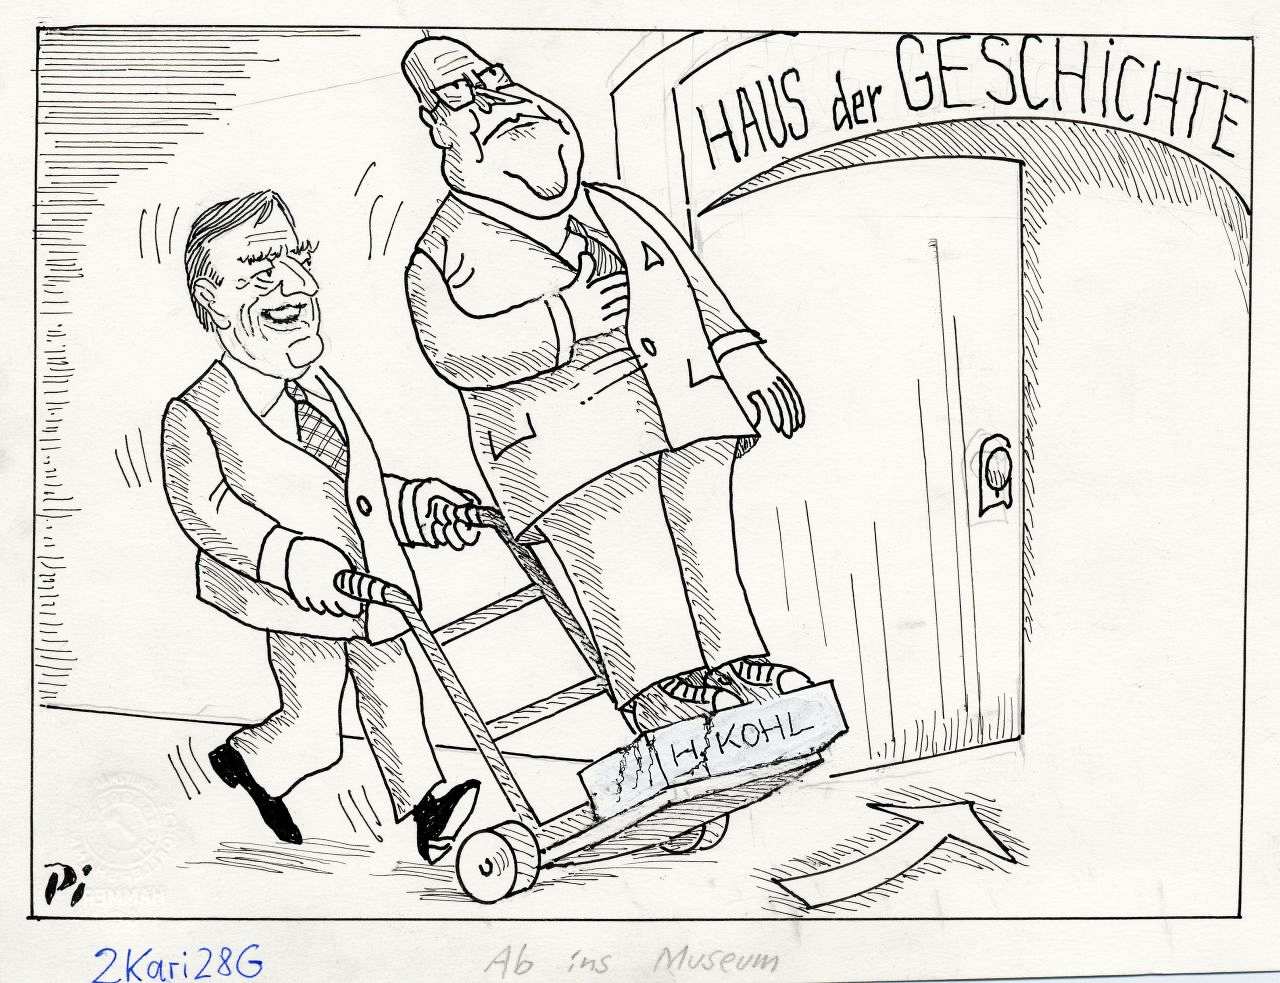 Karikatur in schwarz/weiß. Abbildung von Gerhard Schröder, der Helmut Kohl als Denkmal auf einer Sackkarre ins Museum Haus der Geschichte schiebt. Mit Signatur unten links.